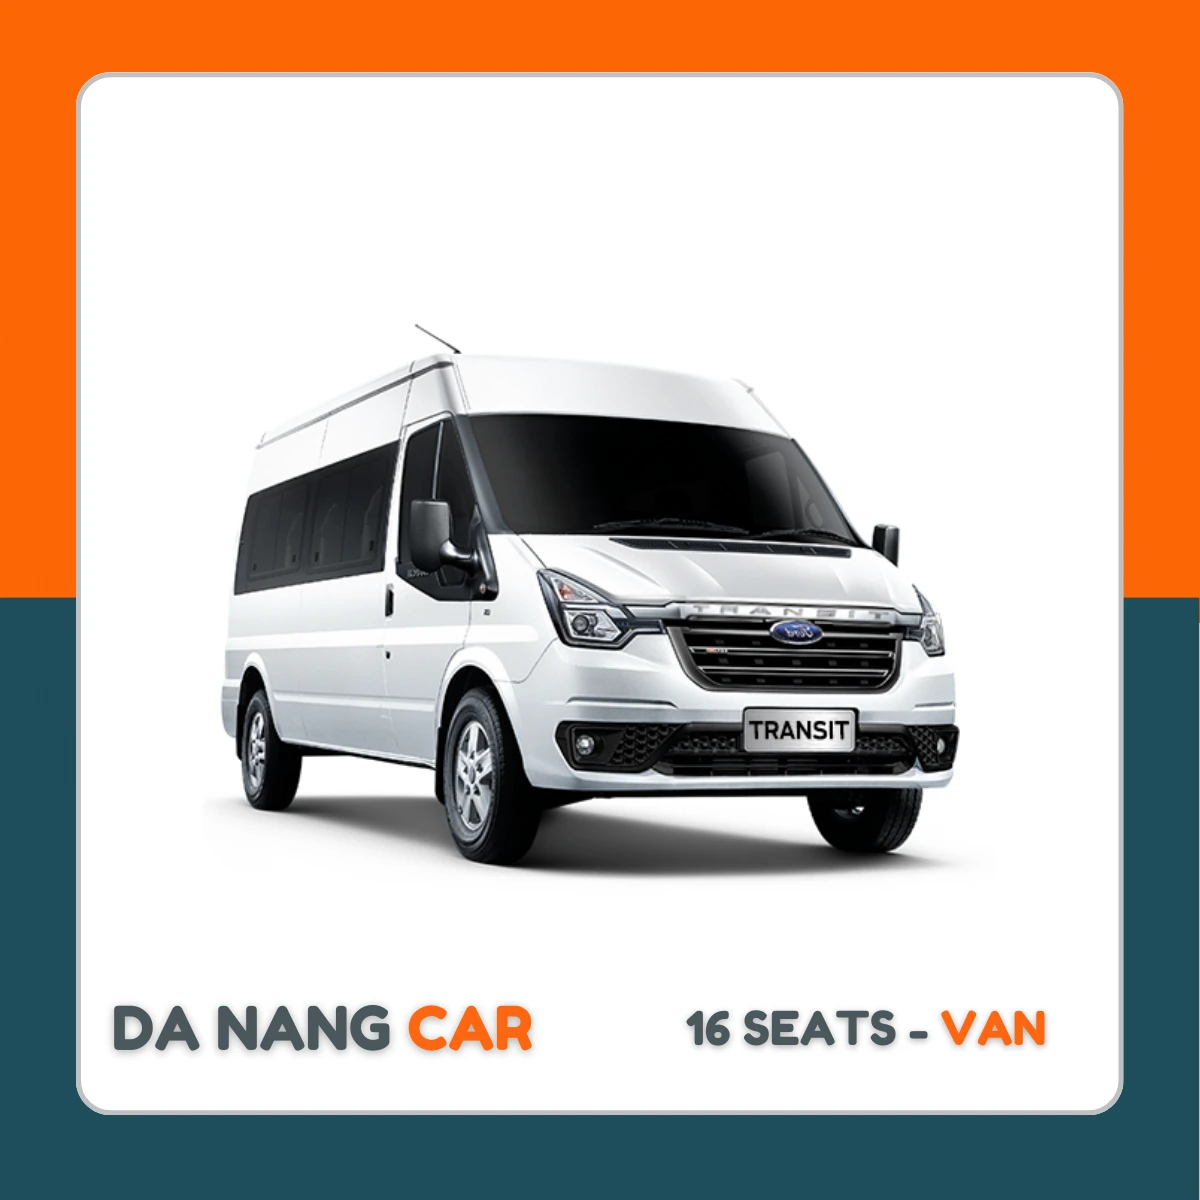 16 Seats - Van Car